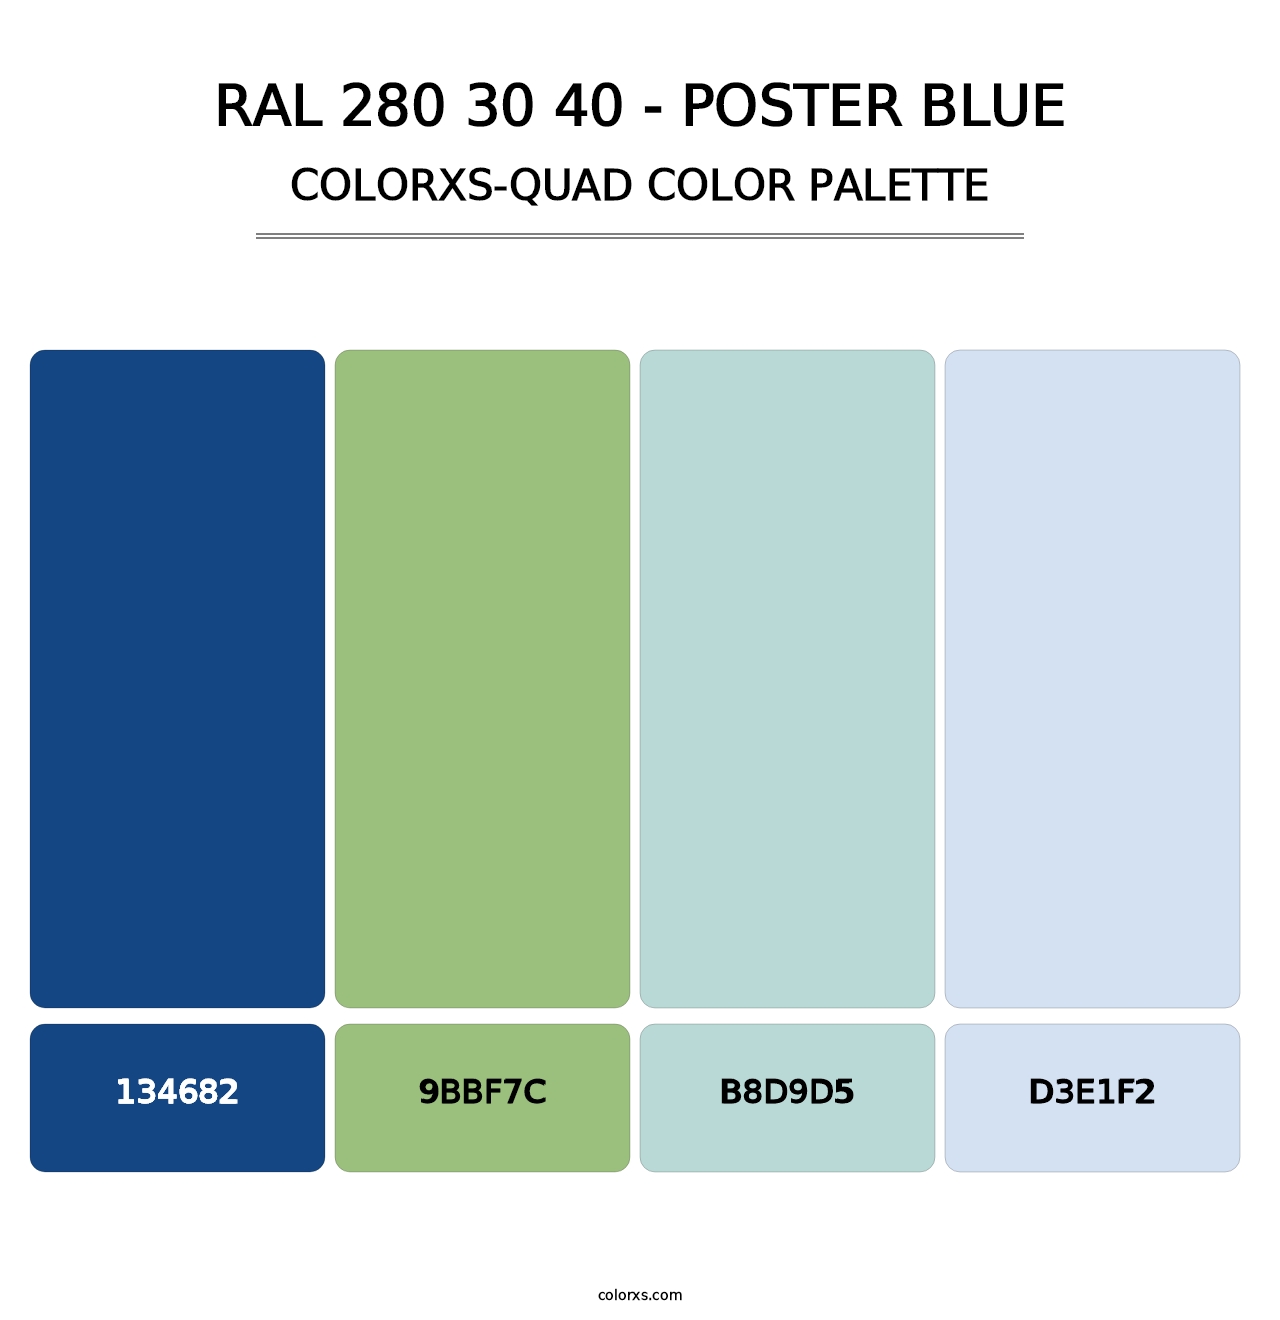 RAL 280 30 40 - Poster Blue - Colorxs Quad Palette